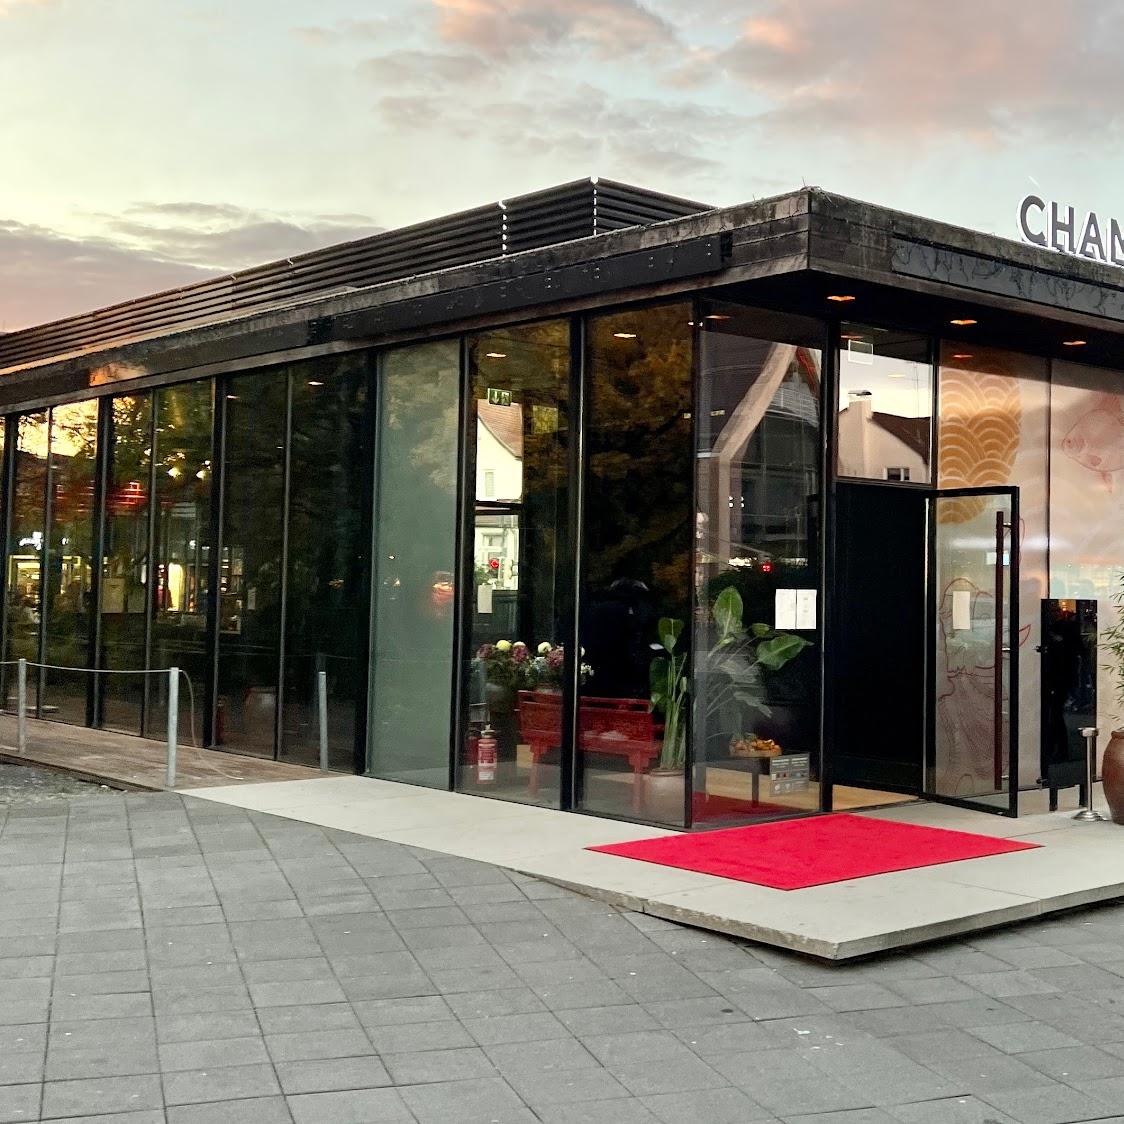 Restaurant "Champa" in Metzingen